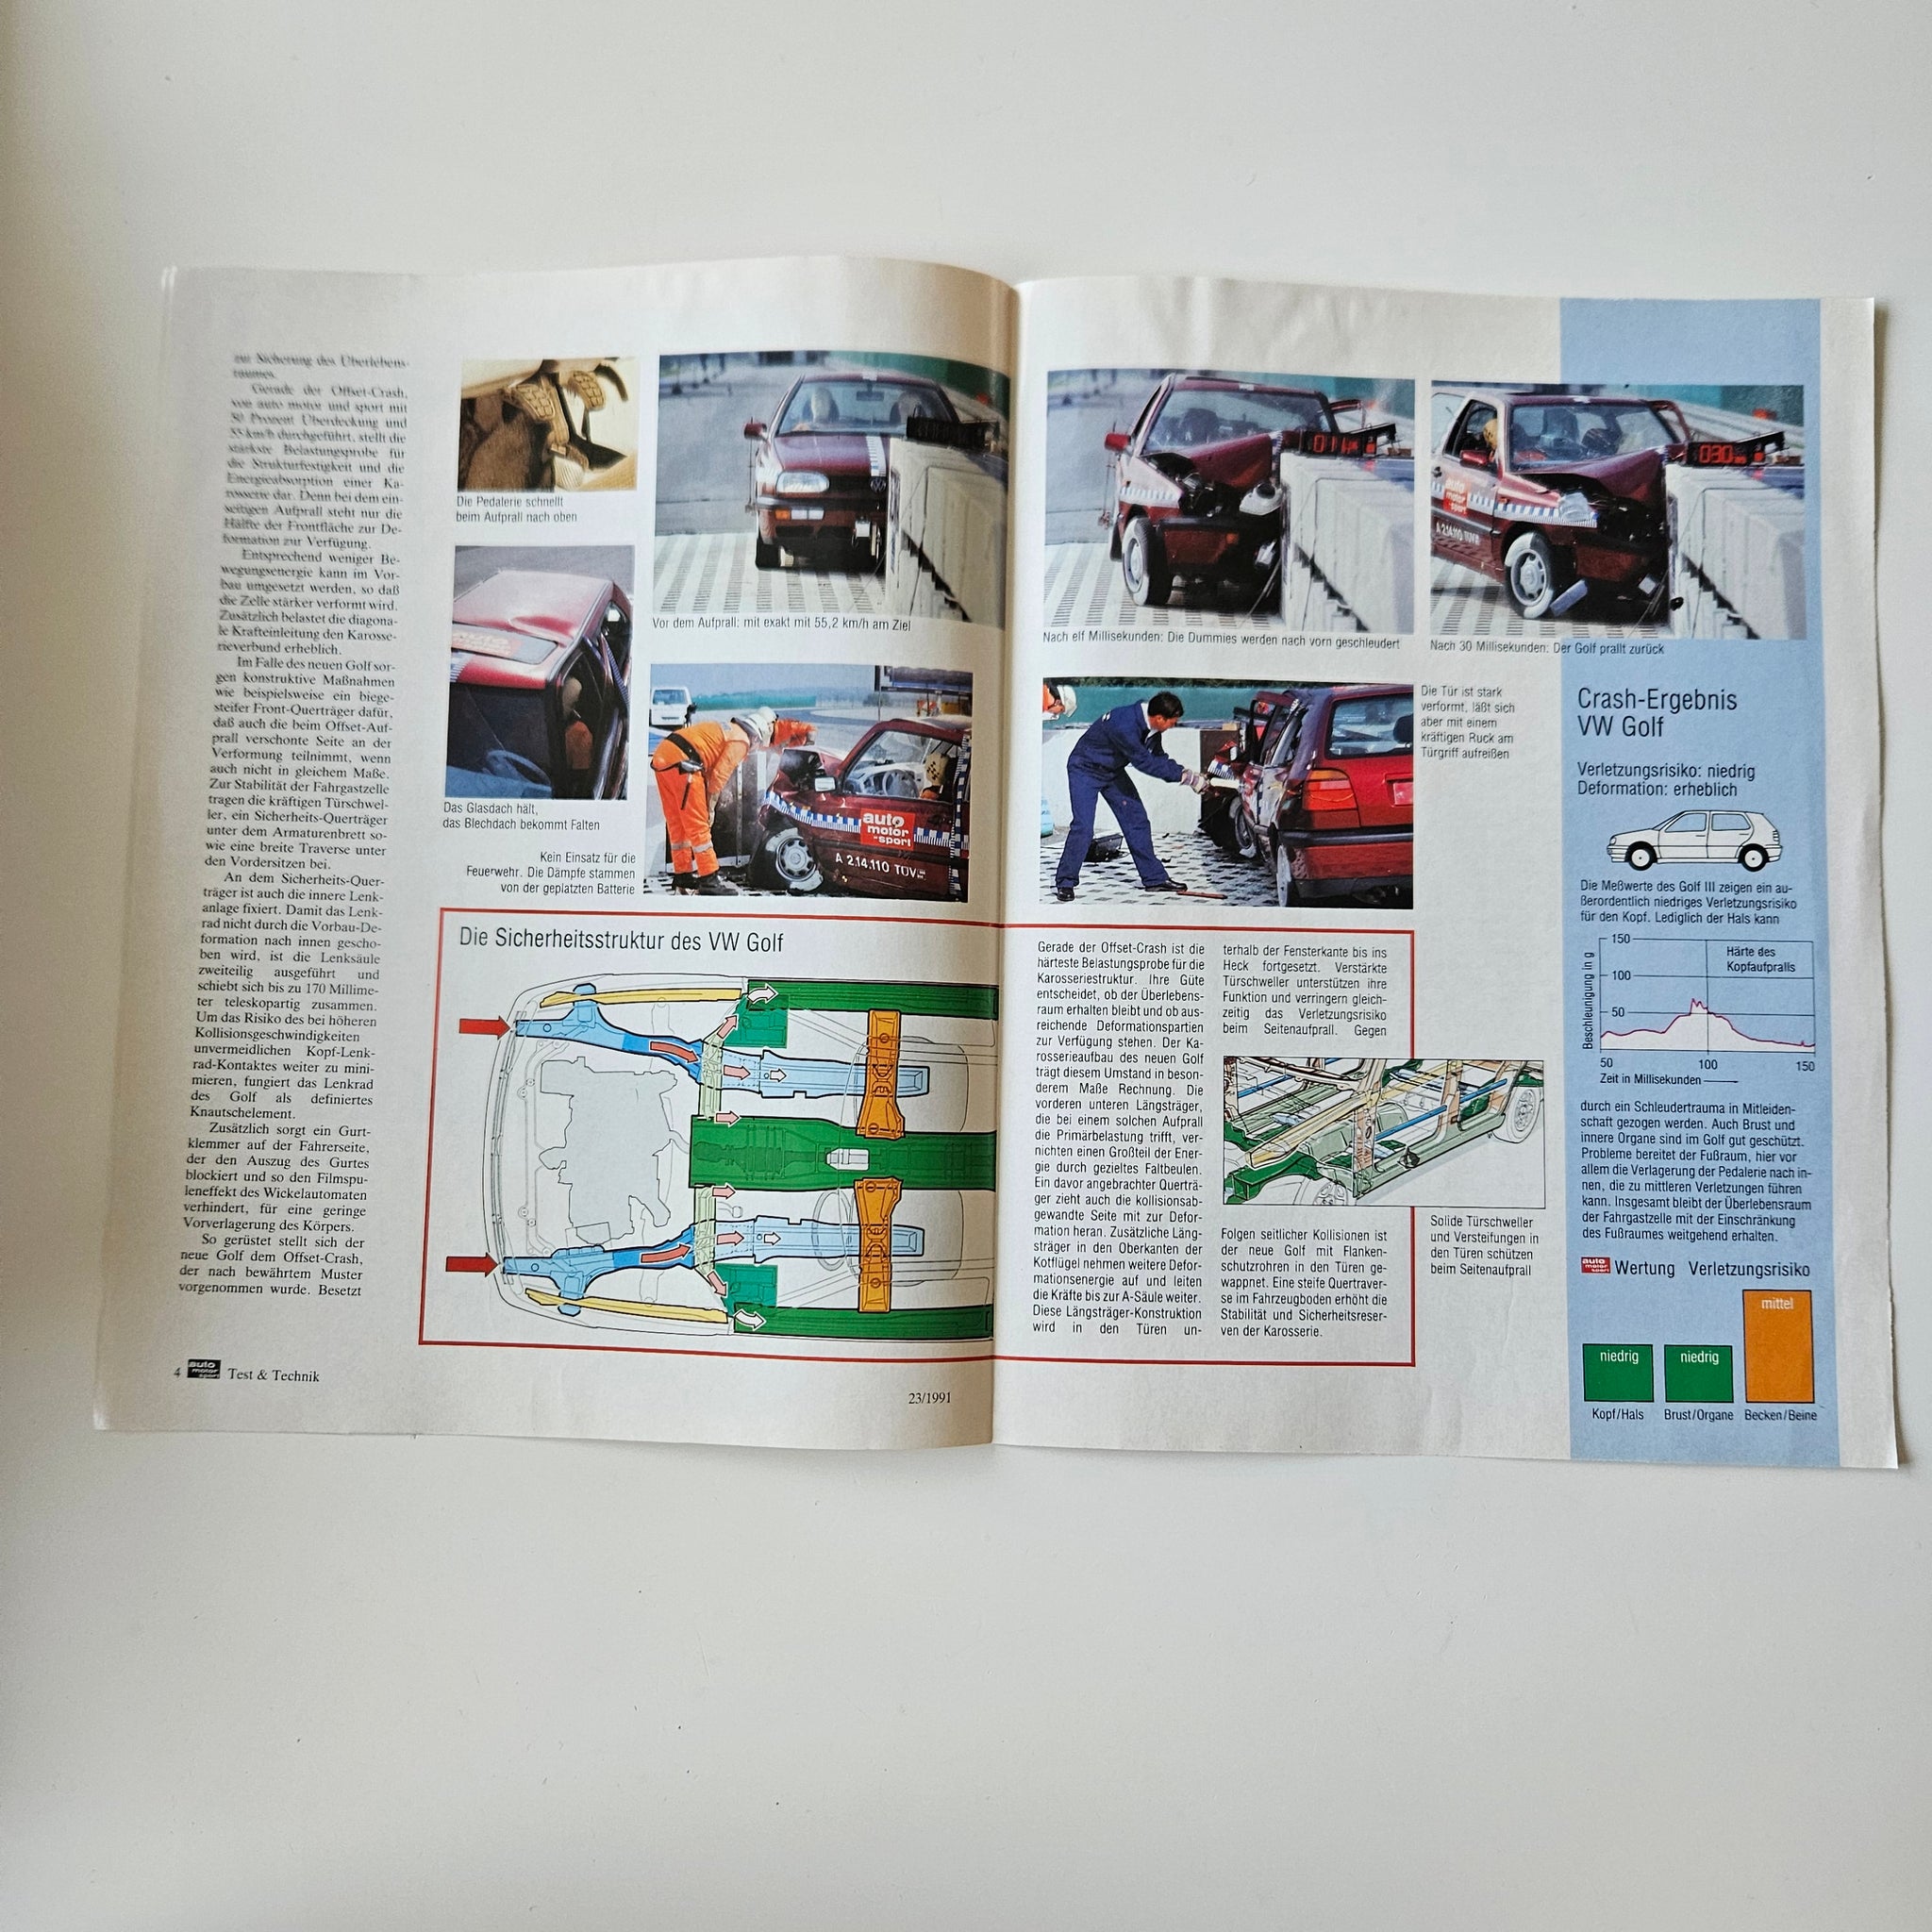 1992/93 VW Parts Accessories Brochure – Best VW Parts